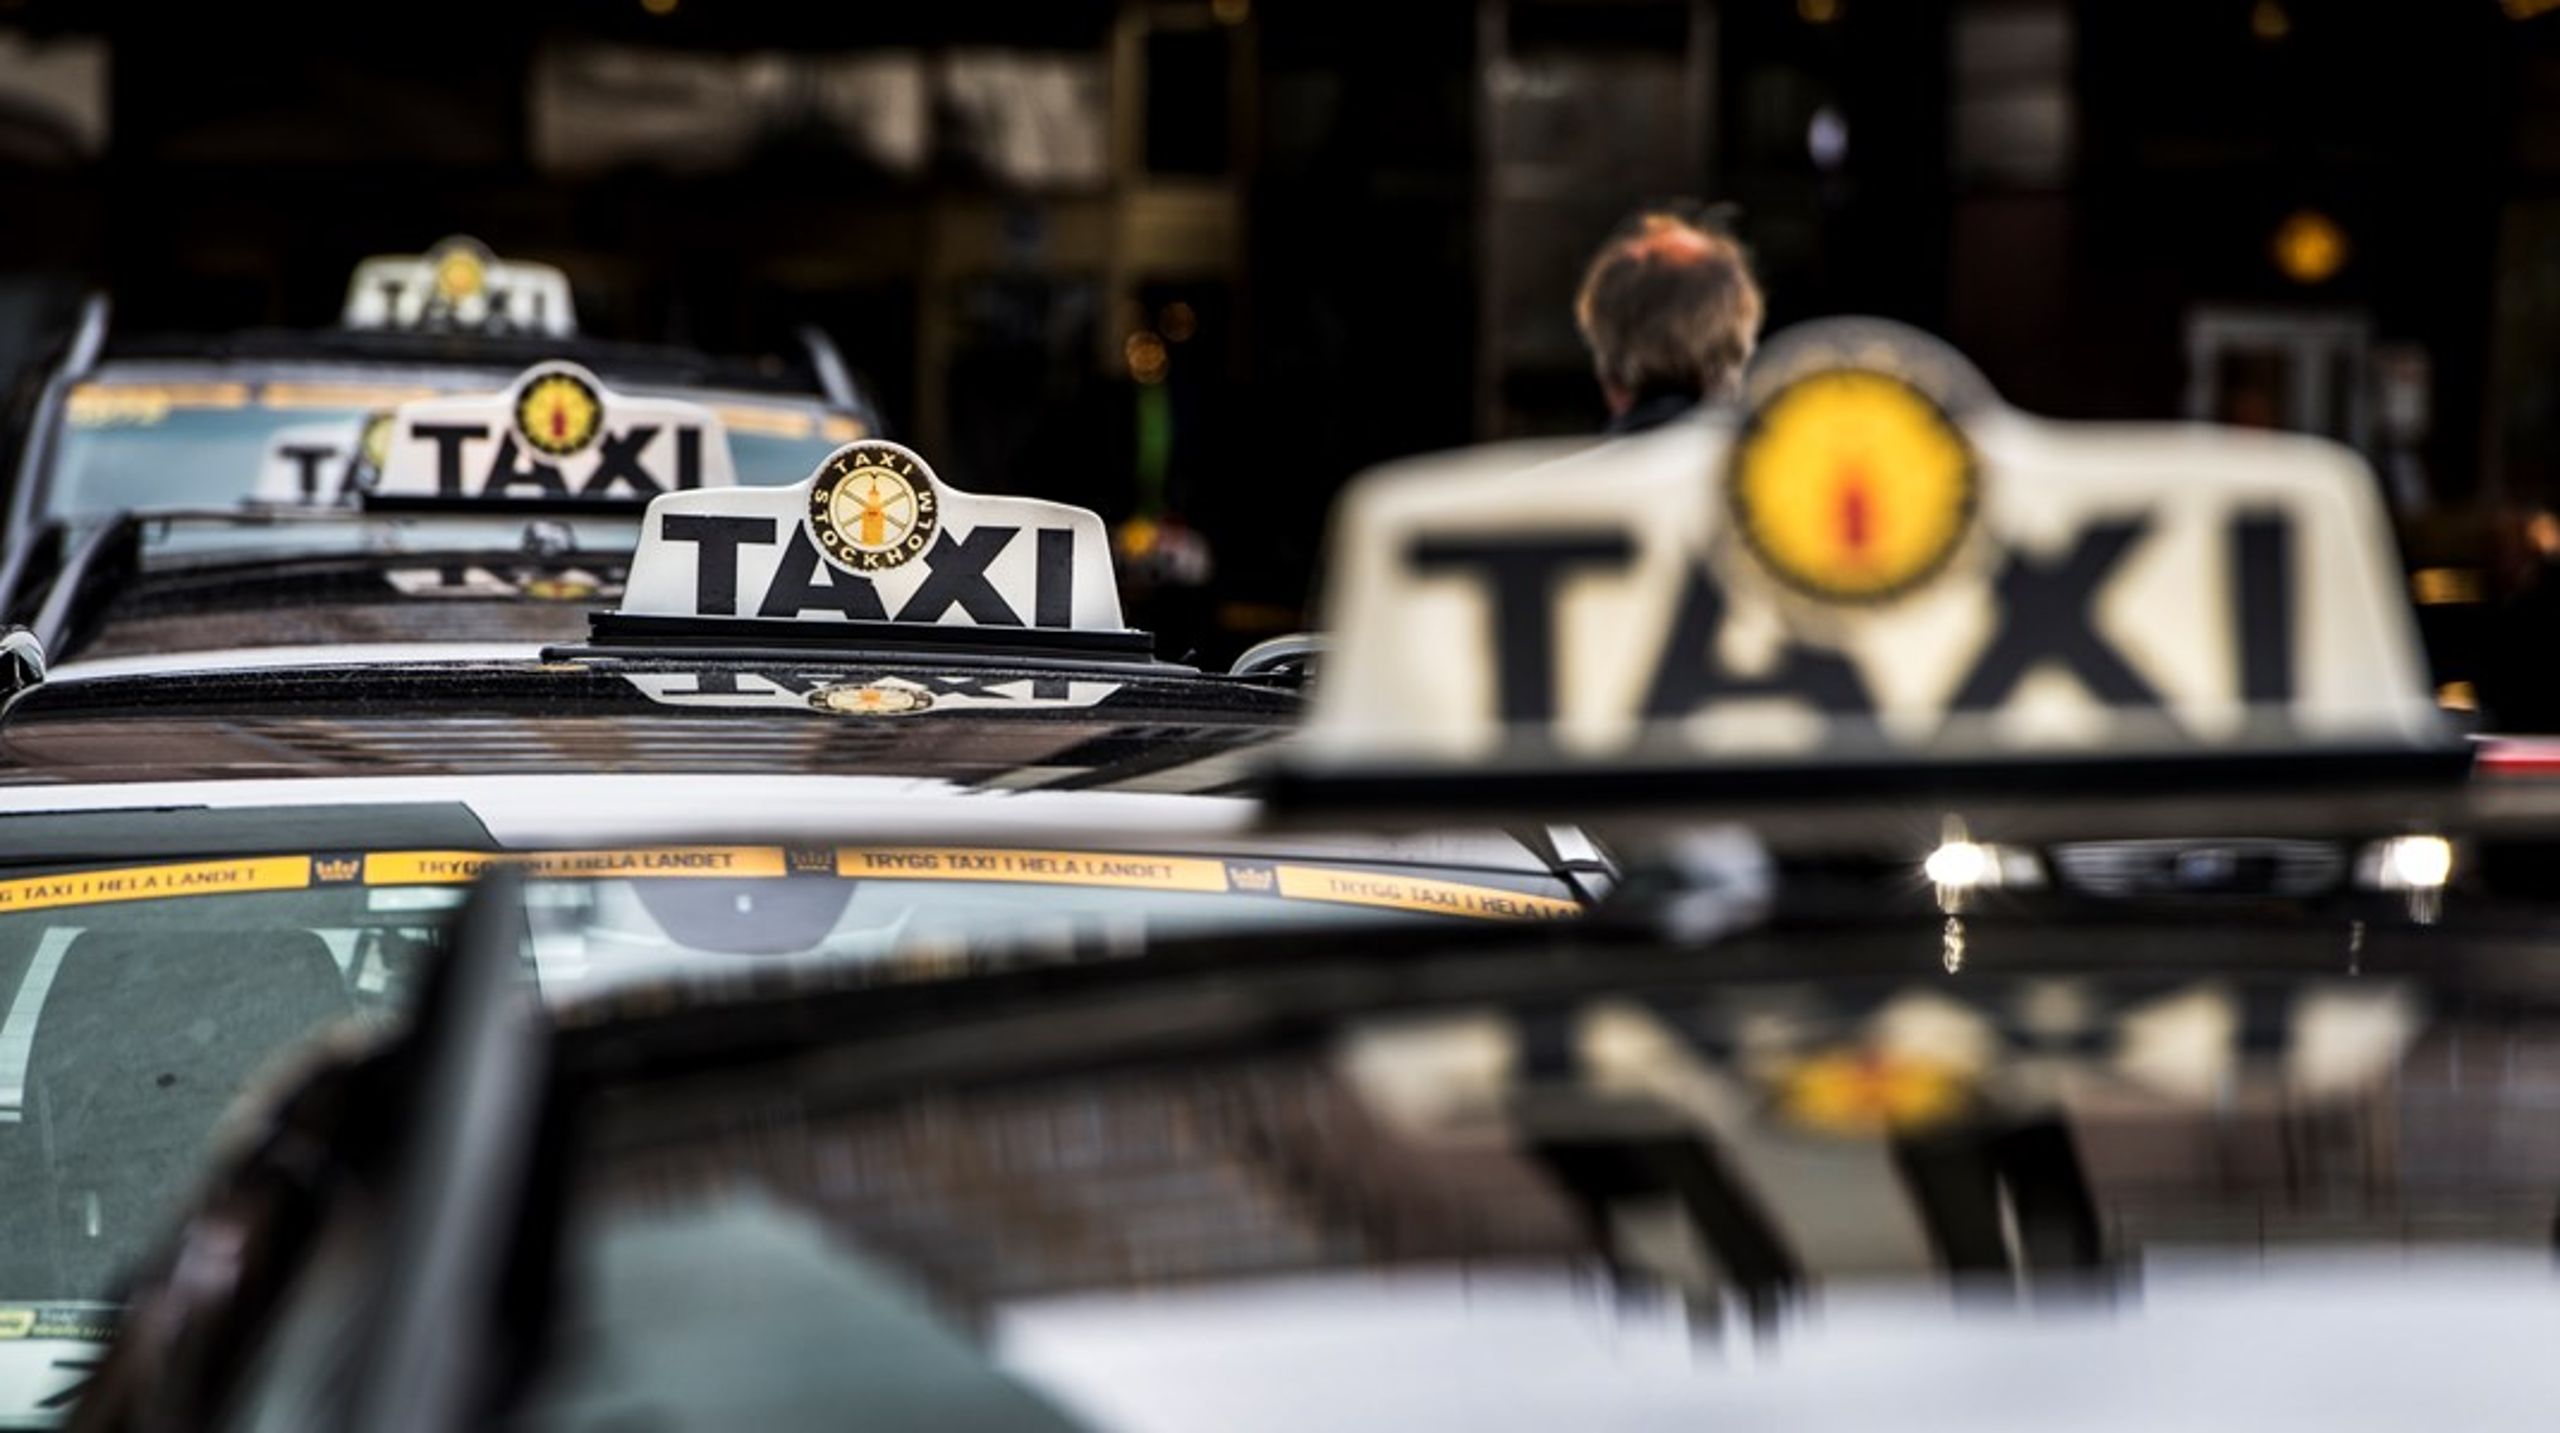 Totalt åkte riksdagsledamöterna taxi för 4,3 miljoner kronor förra riksdagsåret.